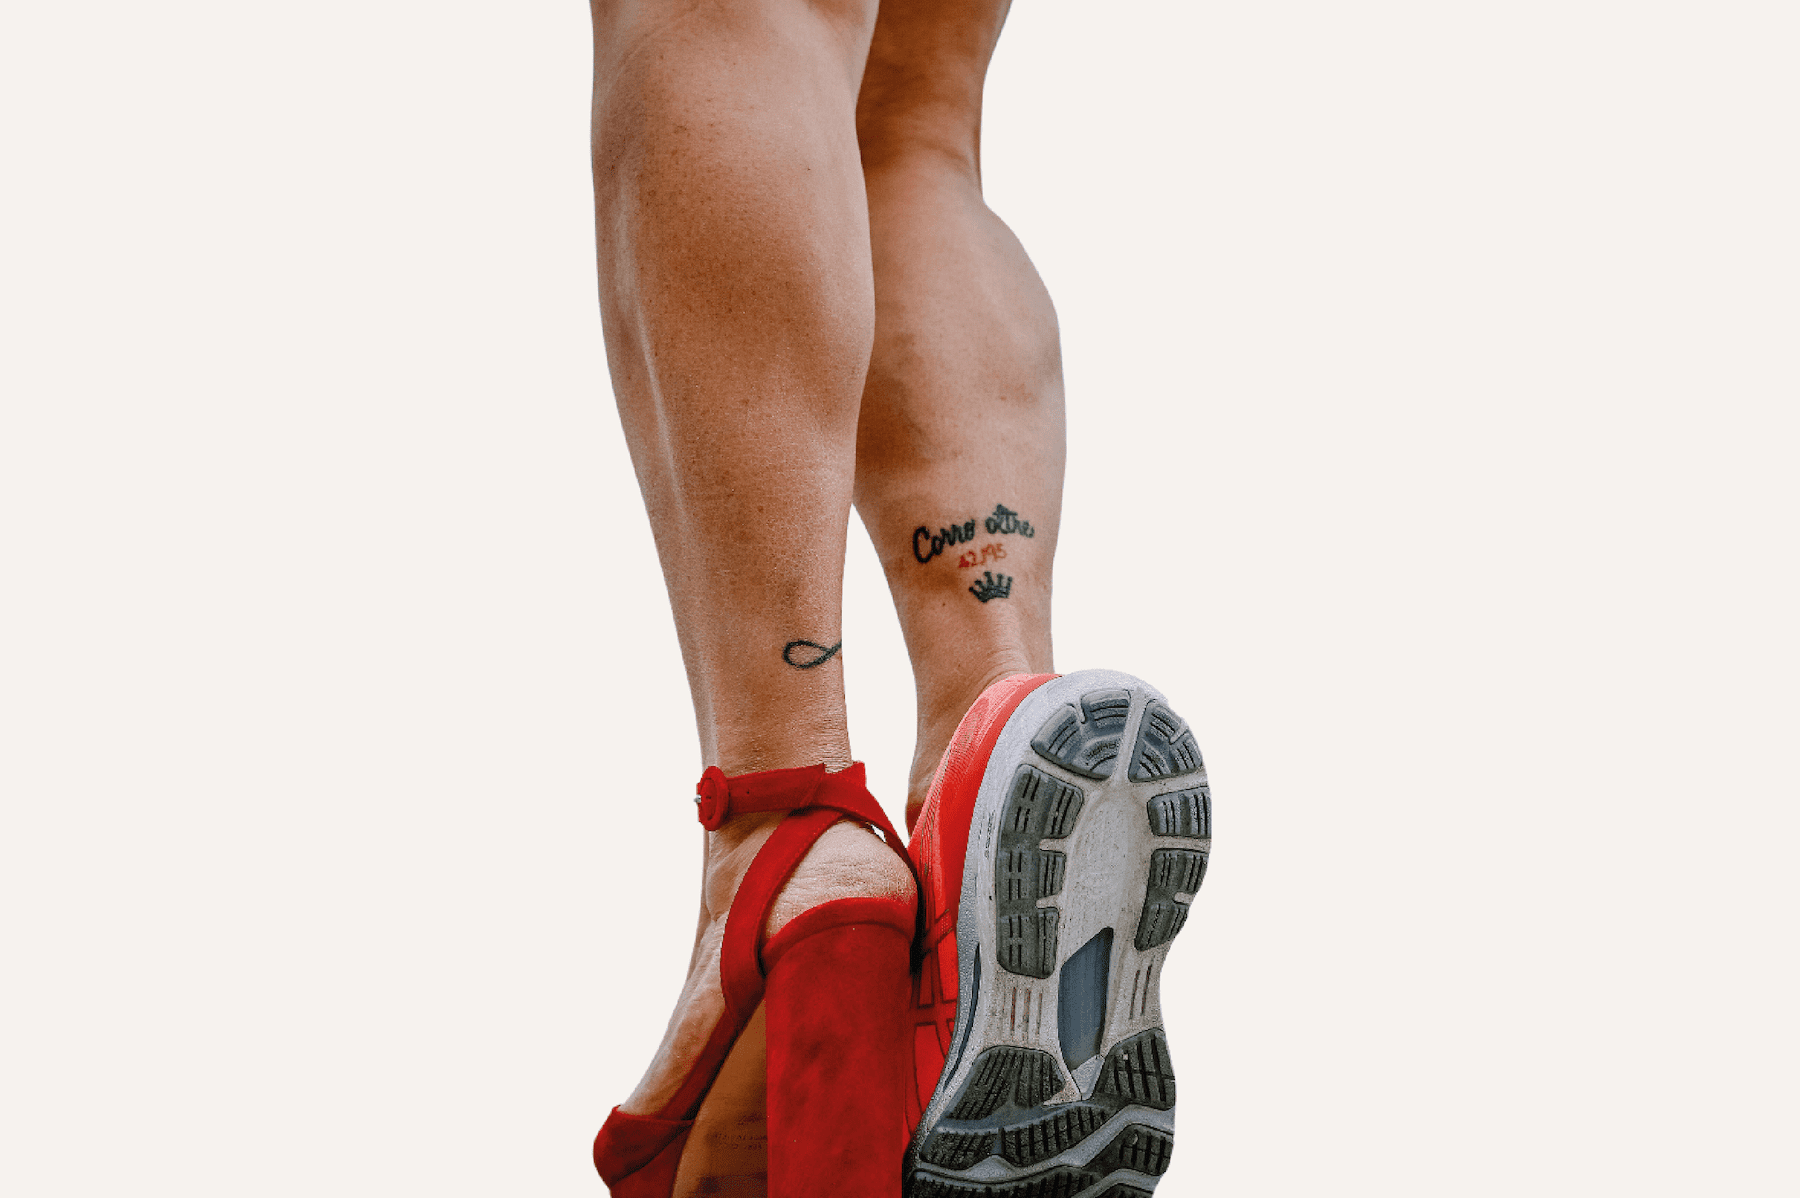 Dettaglio del tatuaggio di Maria Luisa Garatti che raprresenta la sua storia